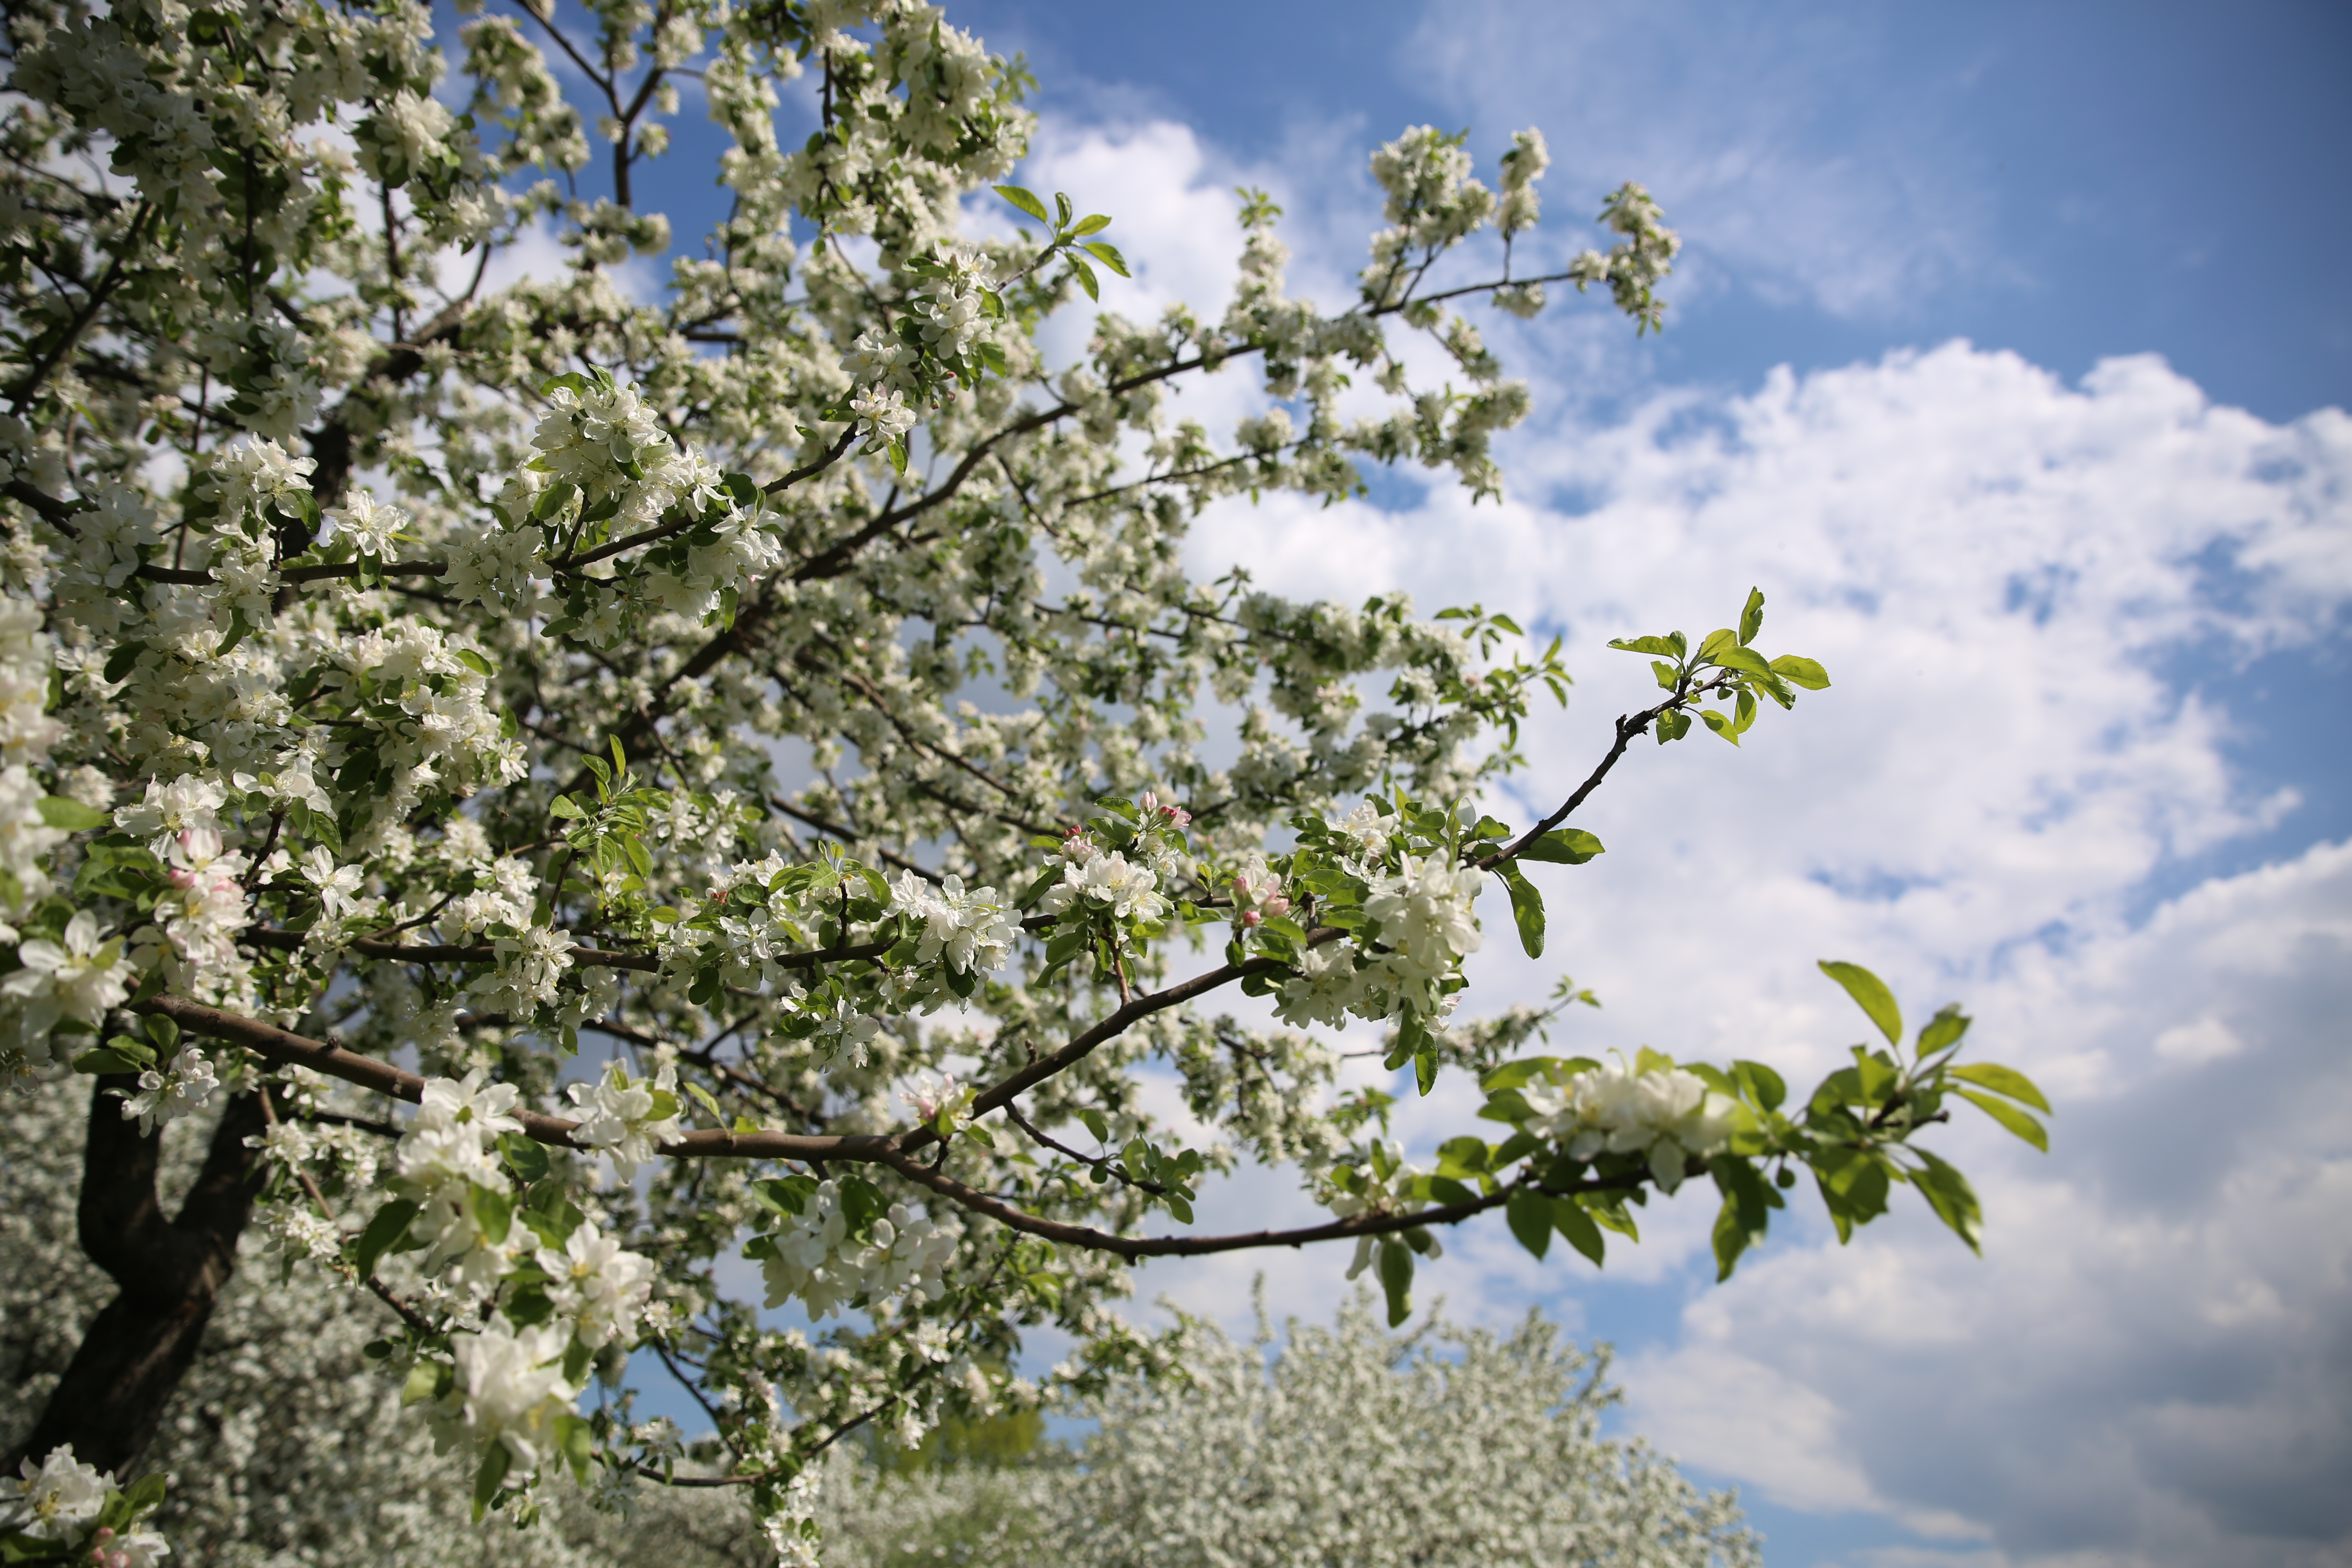 Цветущий яблоневый сад